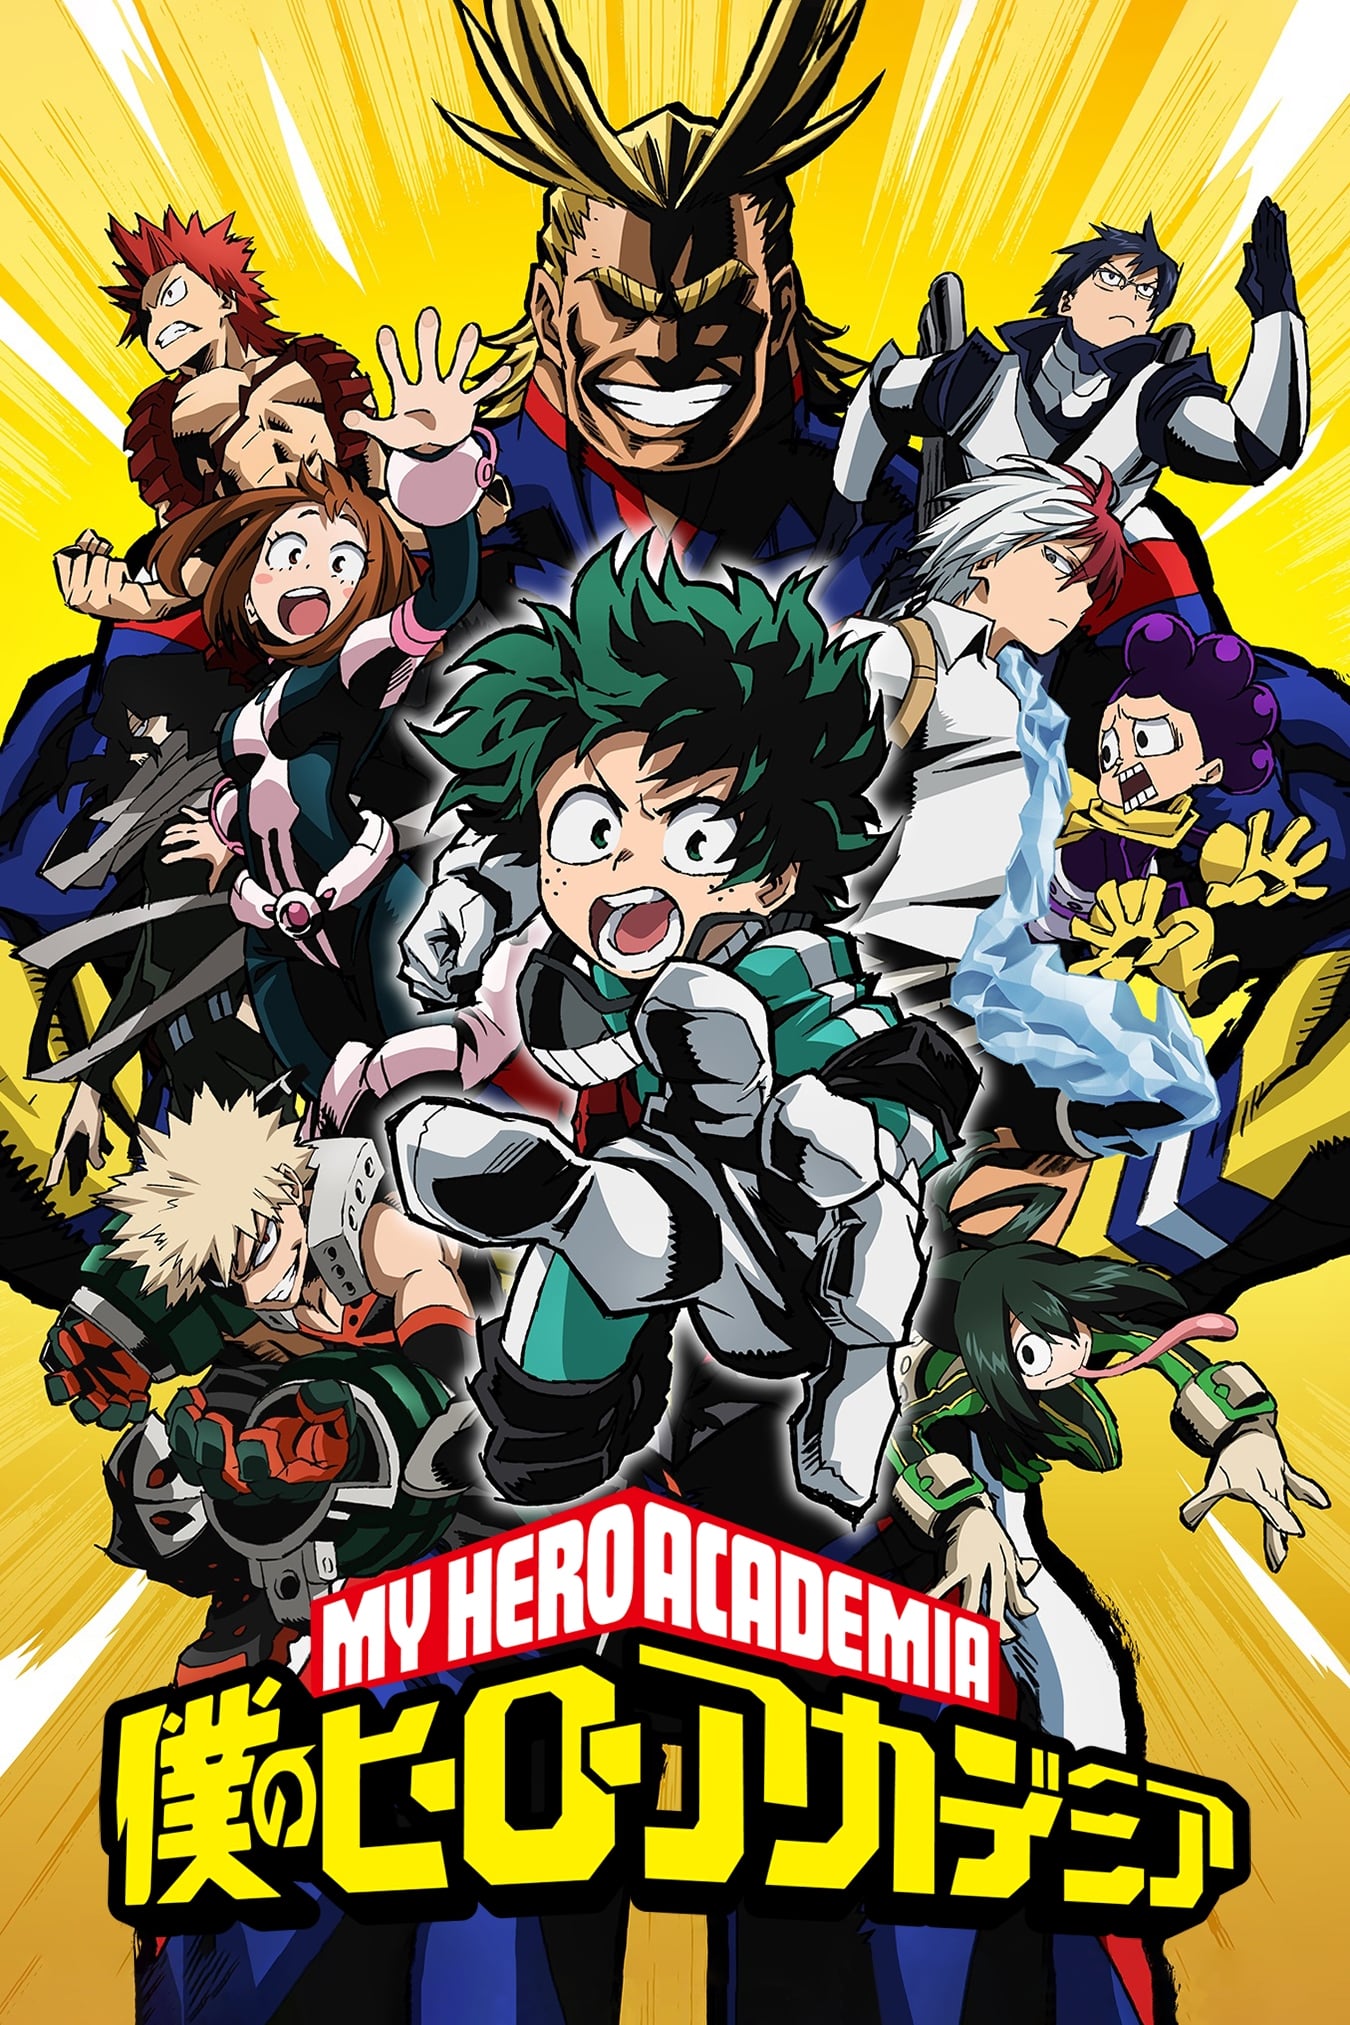 Boku no Hero Academia (My Hero Academia)